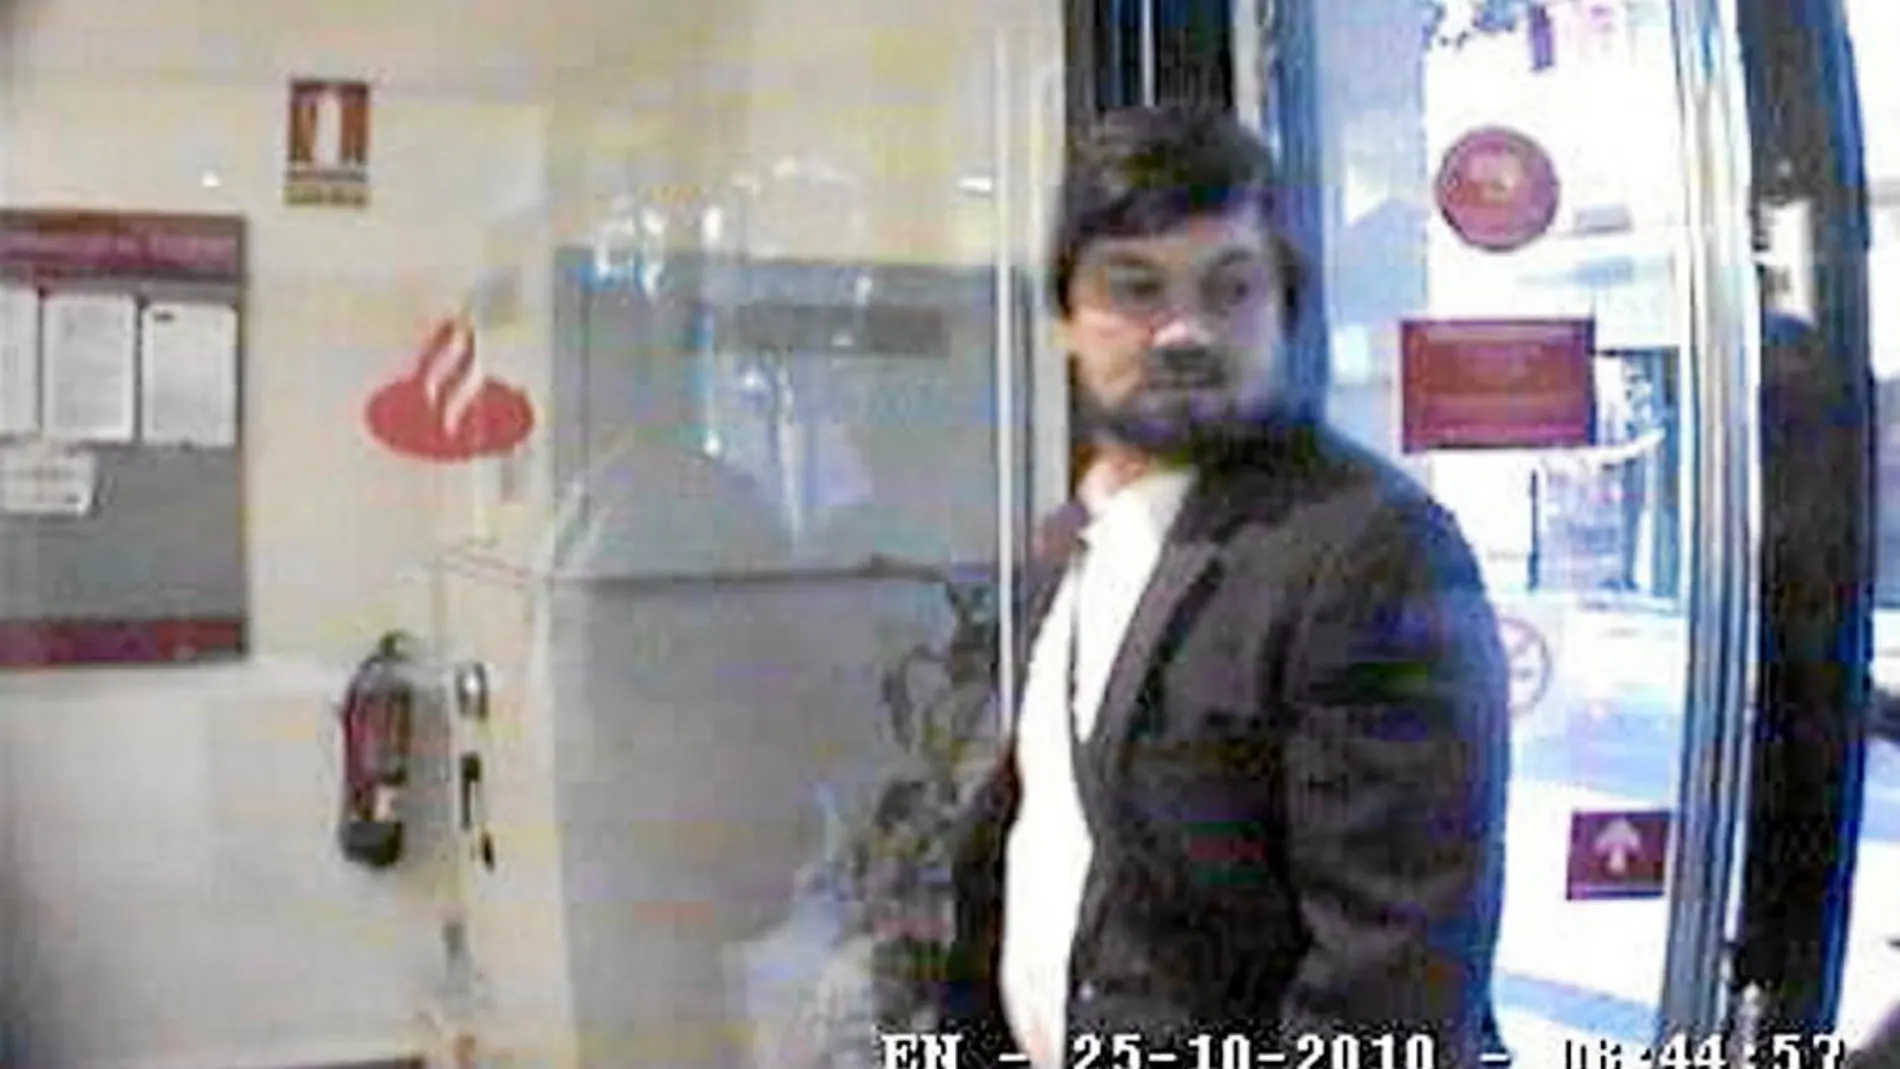 En la imagen, un asalto a un banco de Cambrils, protagonizado por un atracador multirreincidente